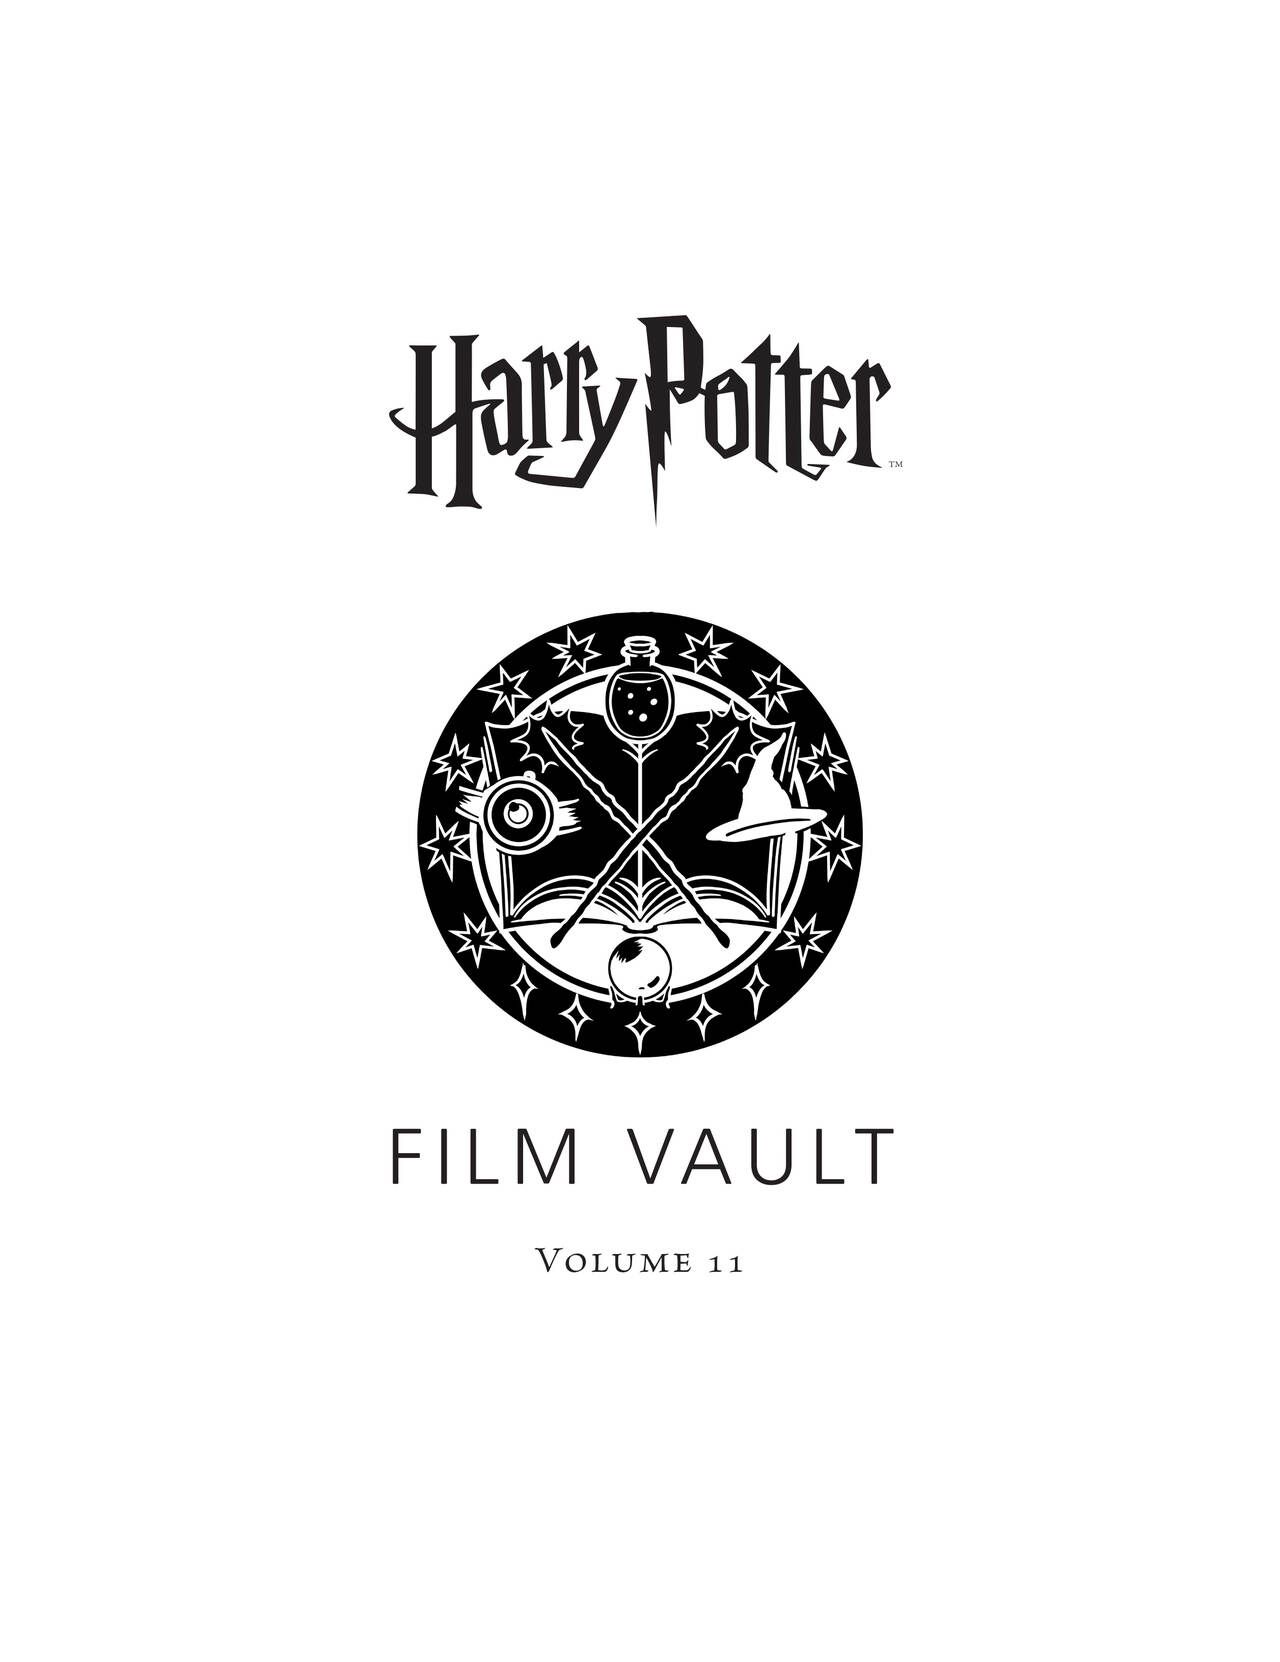 Harry Potter - Film Vault v11 - Hogwarts Professors and Staff 3